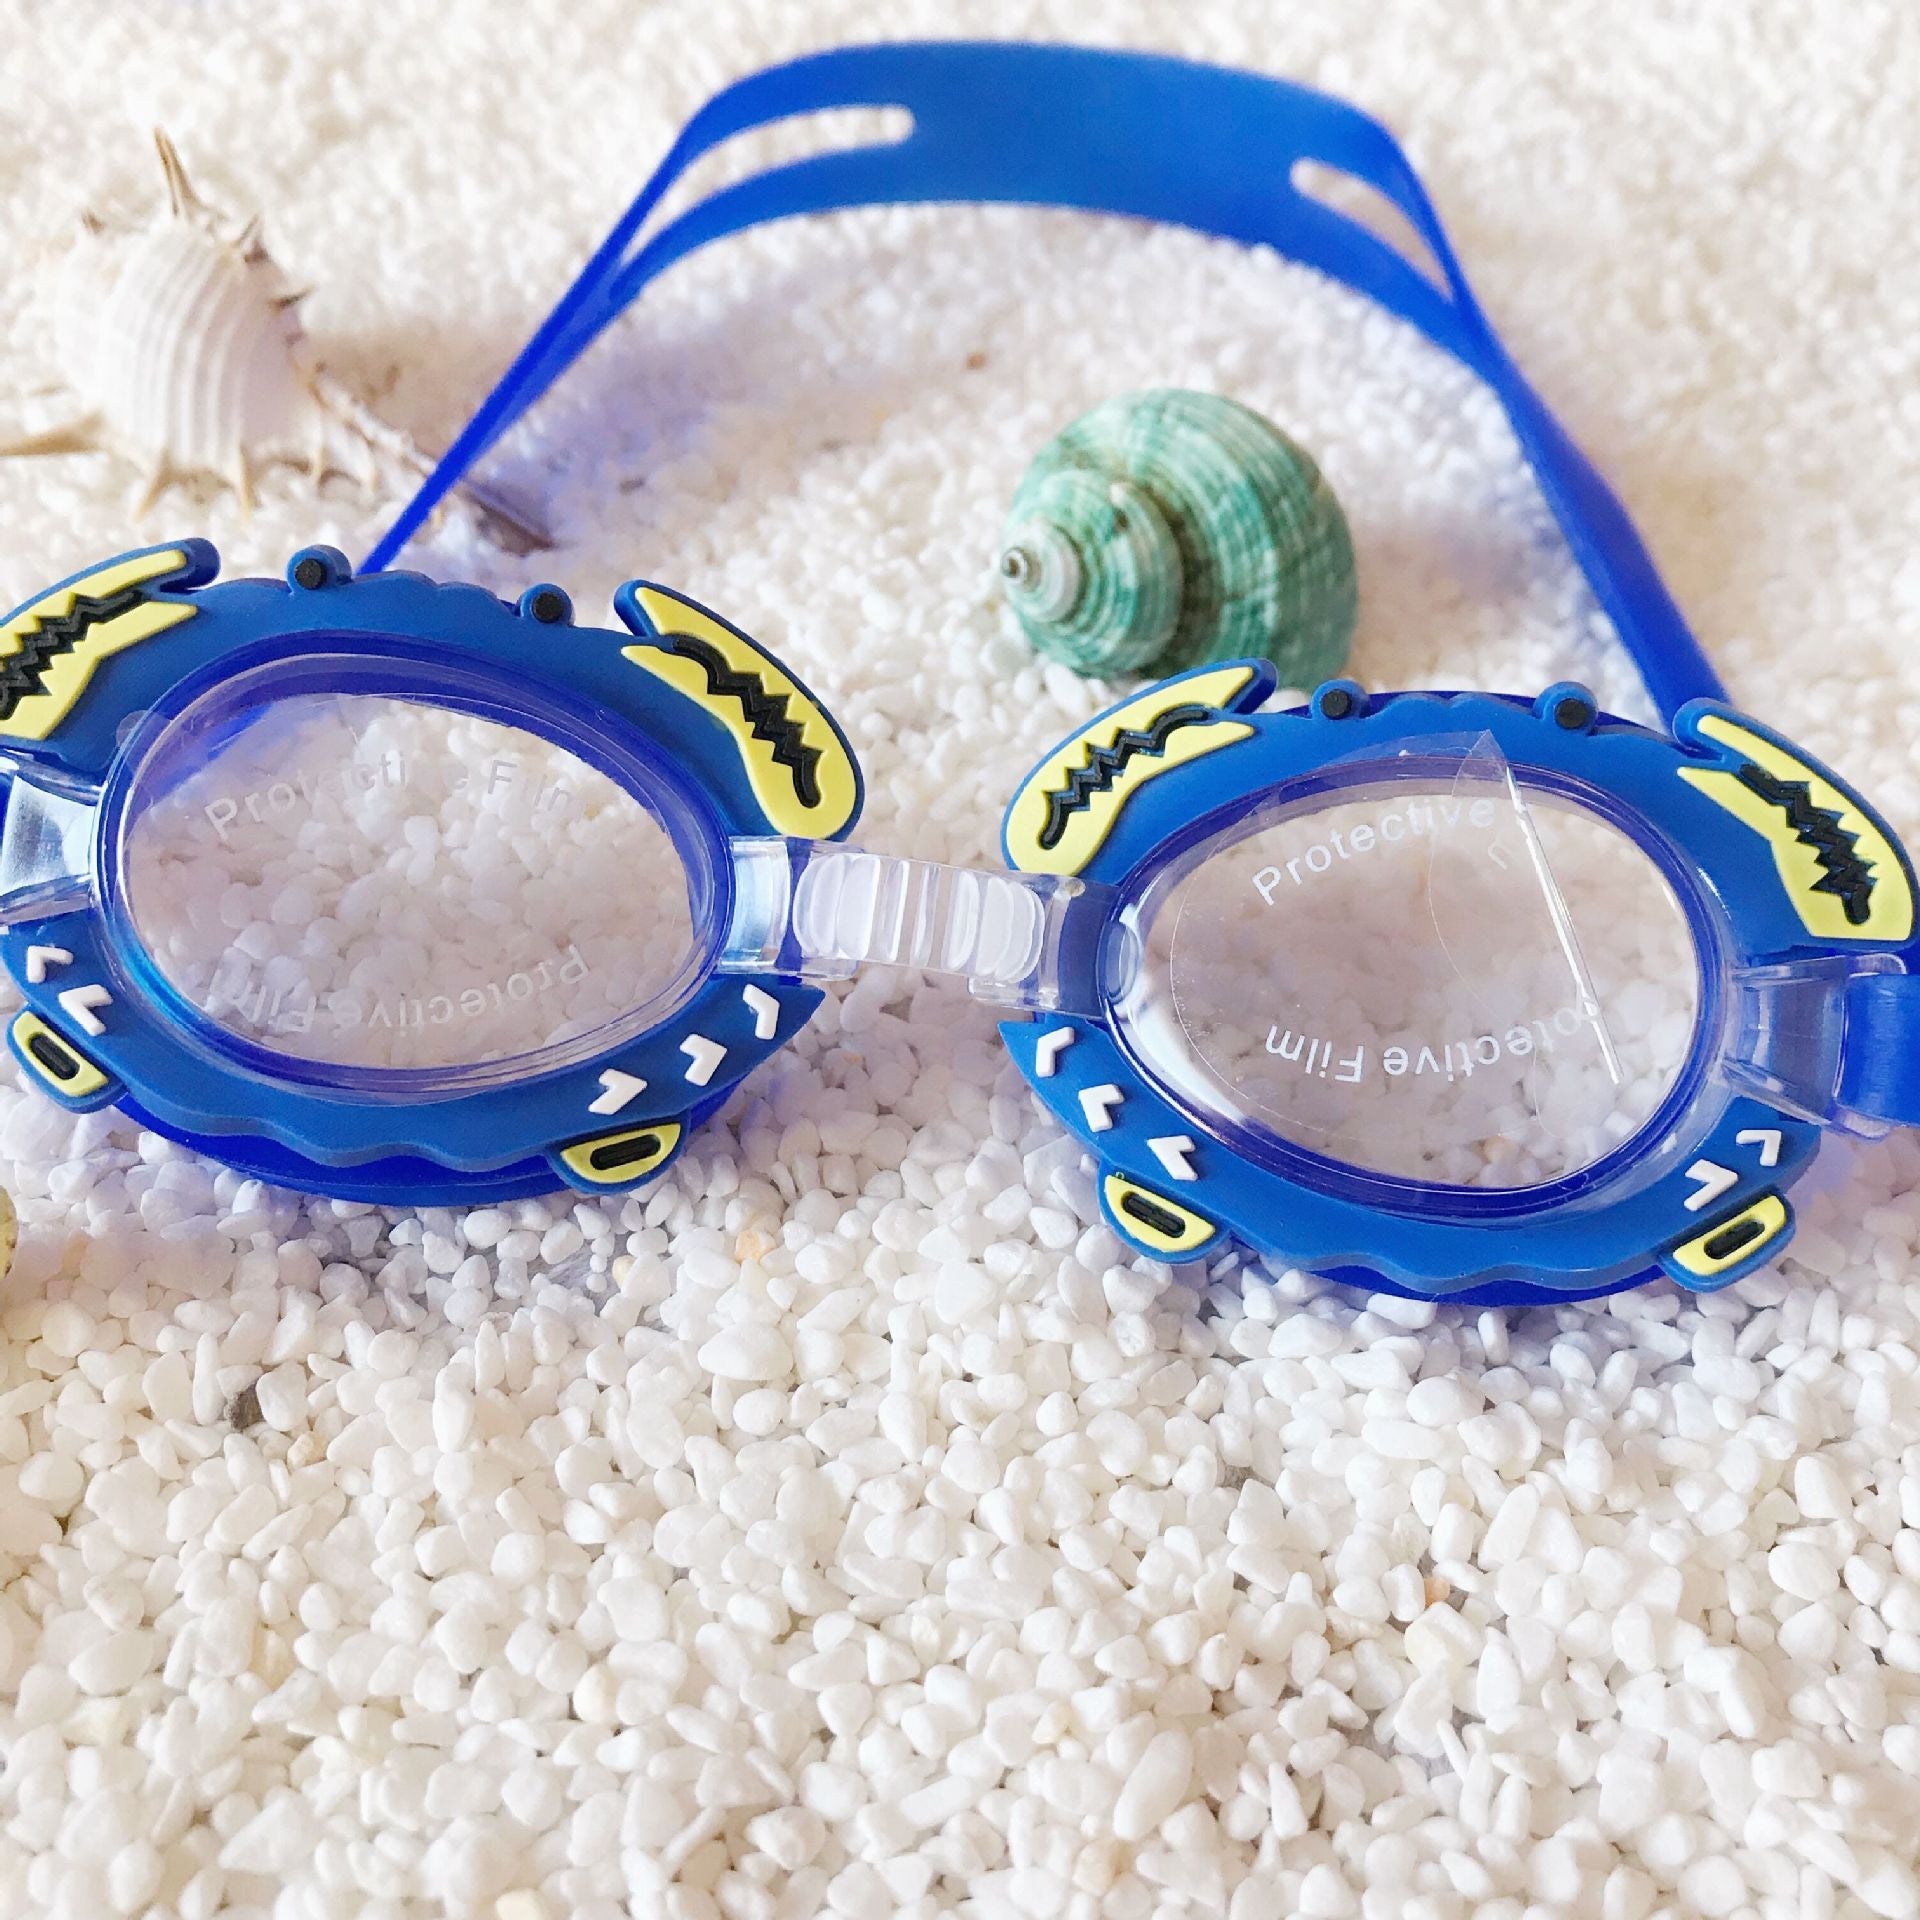 Gafas de natación para niños